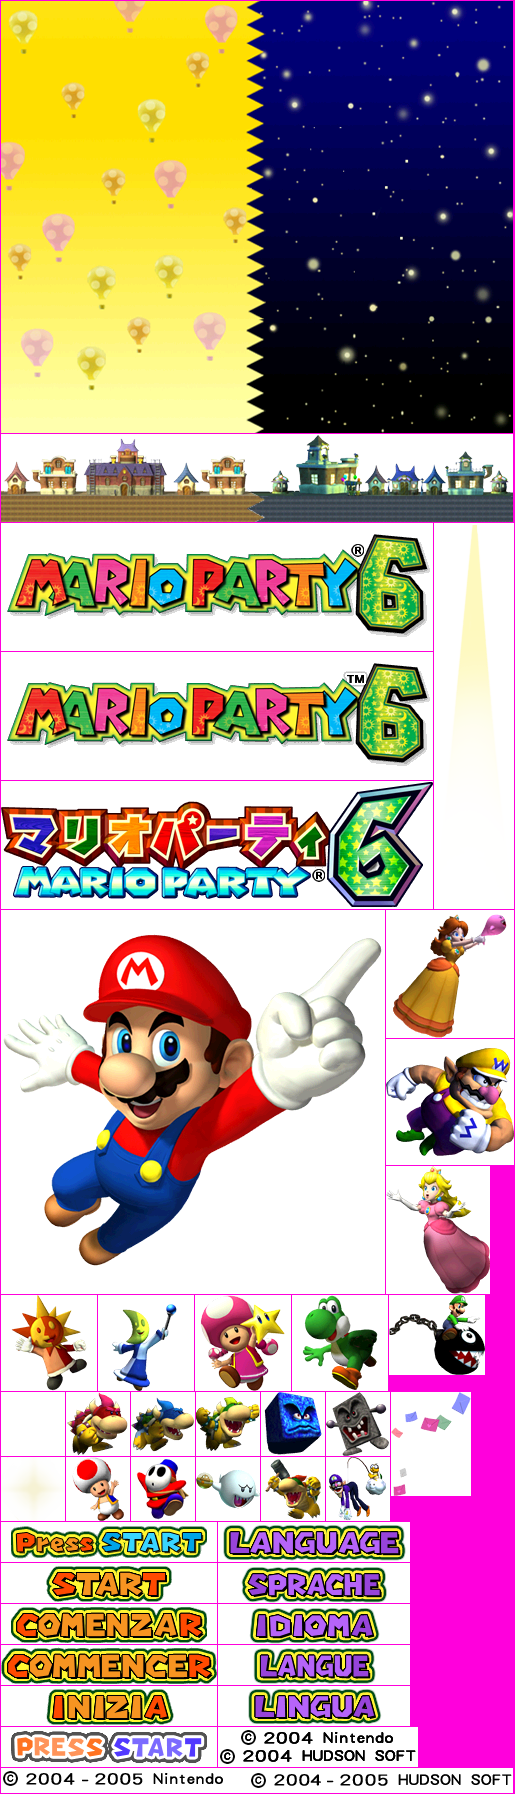 Mario Party 6 - Title Screen